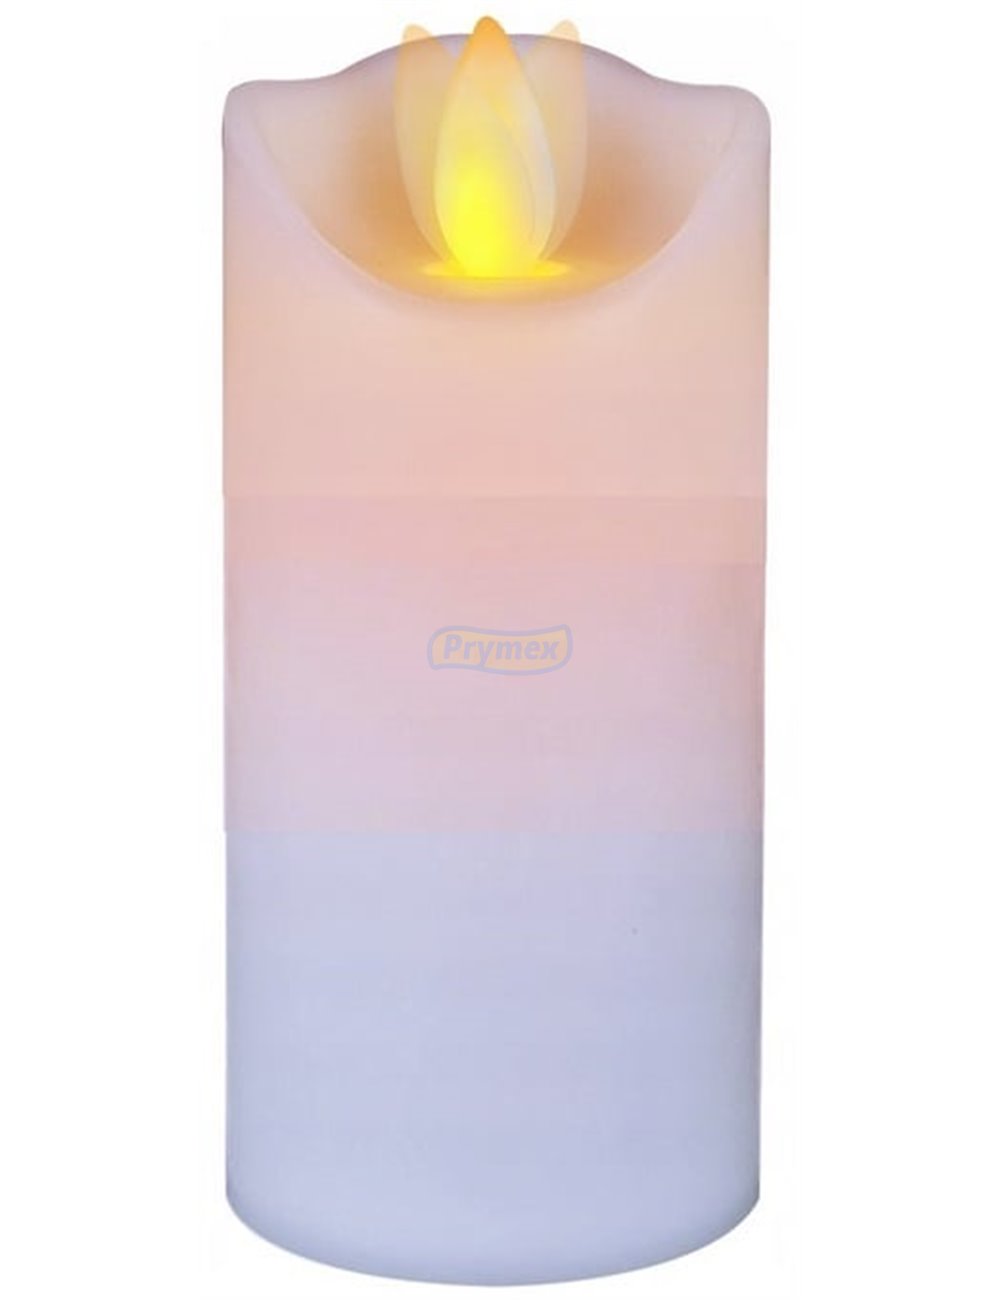 Świeca LED (5x12,5 cm) Ruchomy Płomień Biała Cortina 1 szt